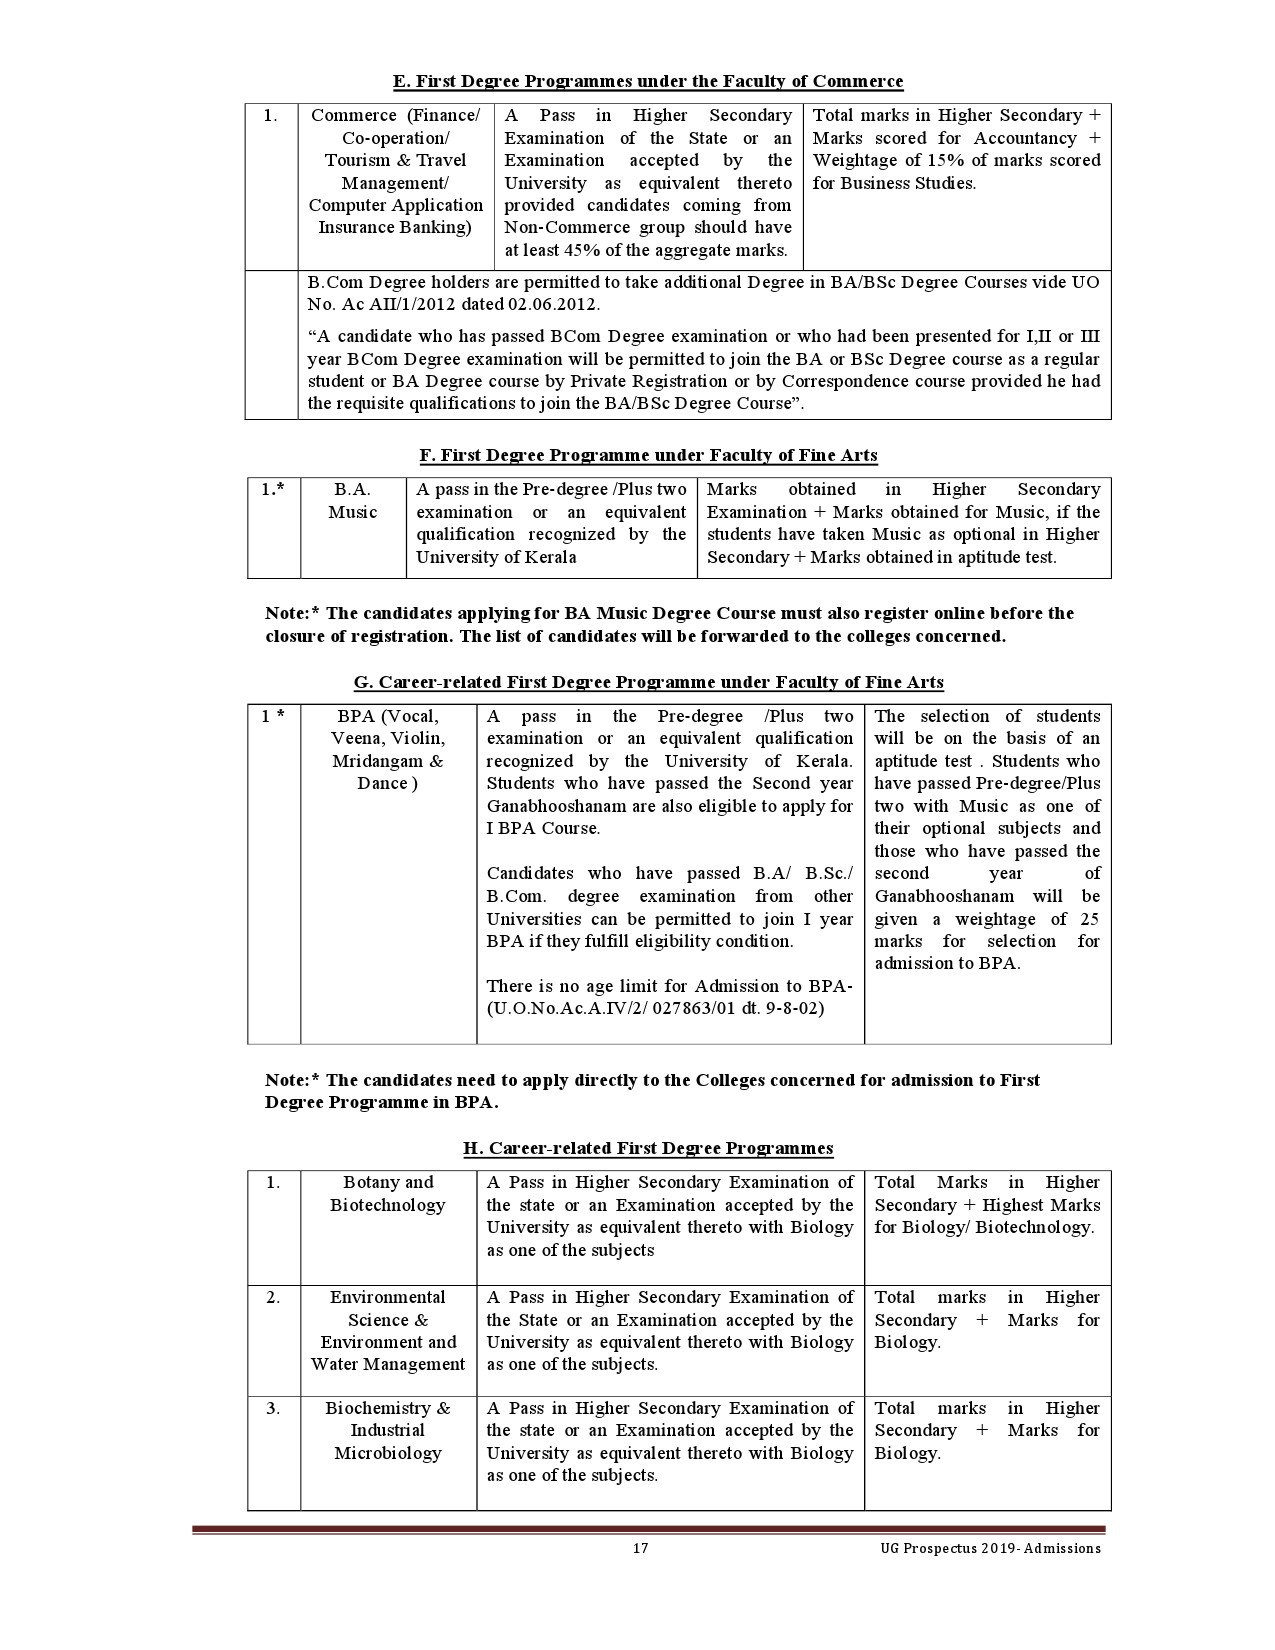 Kerala University UG Admission Prospectus 2019 - Notification Image 17